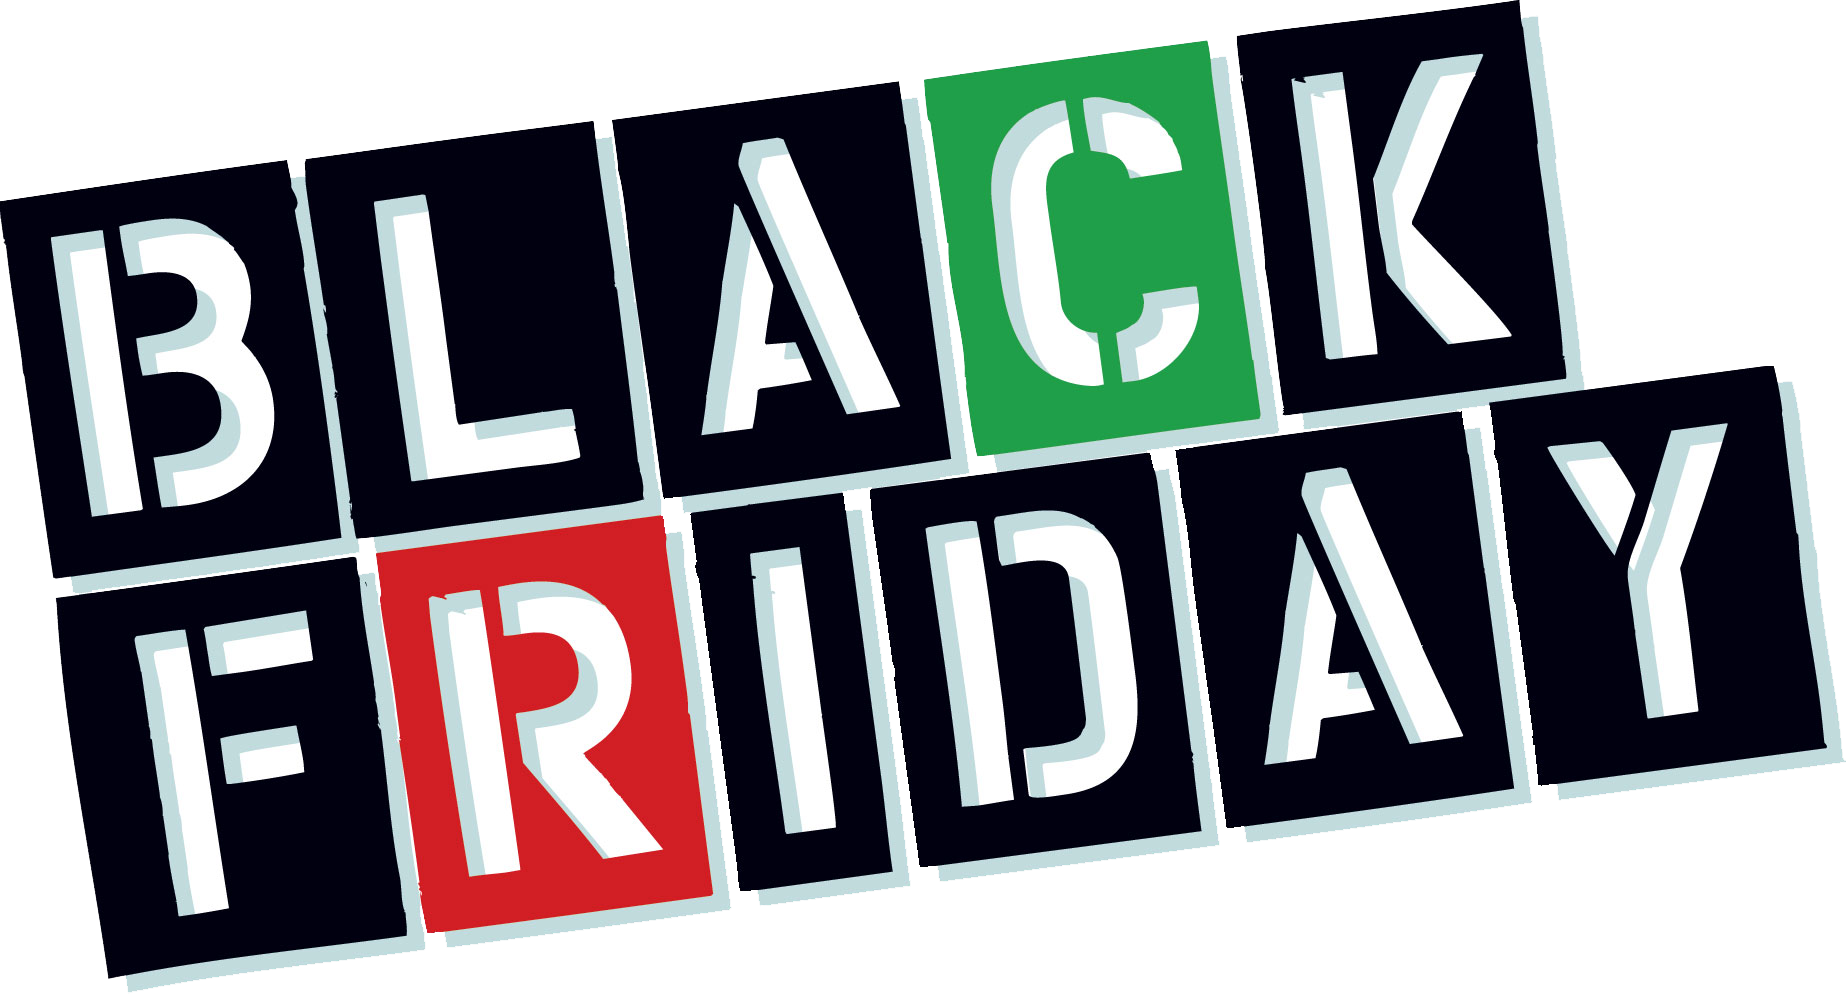 Black Friday Sale PNG Background Image